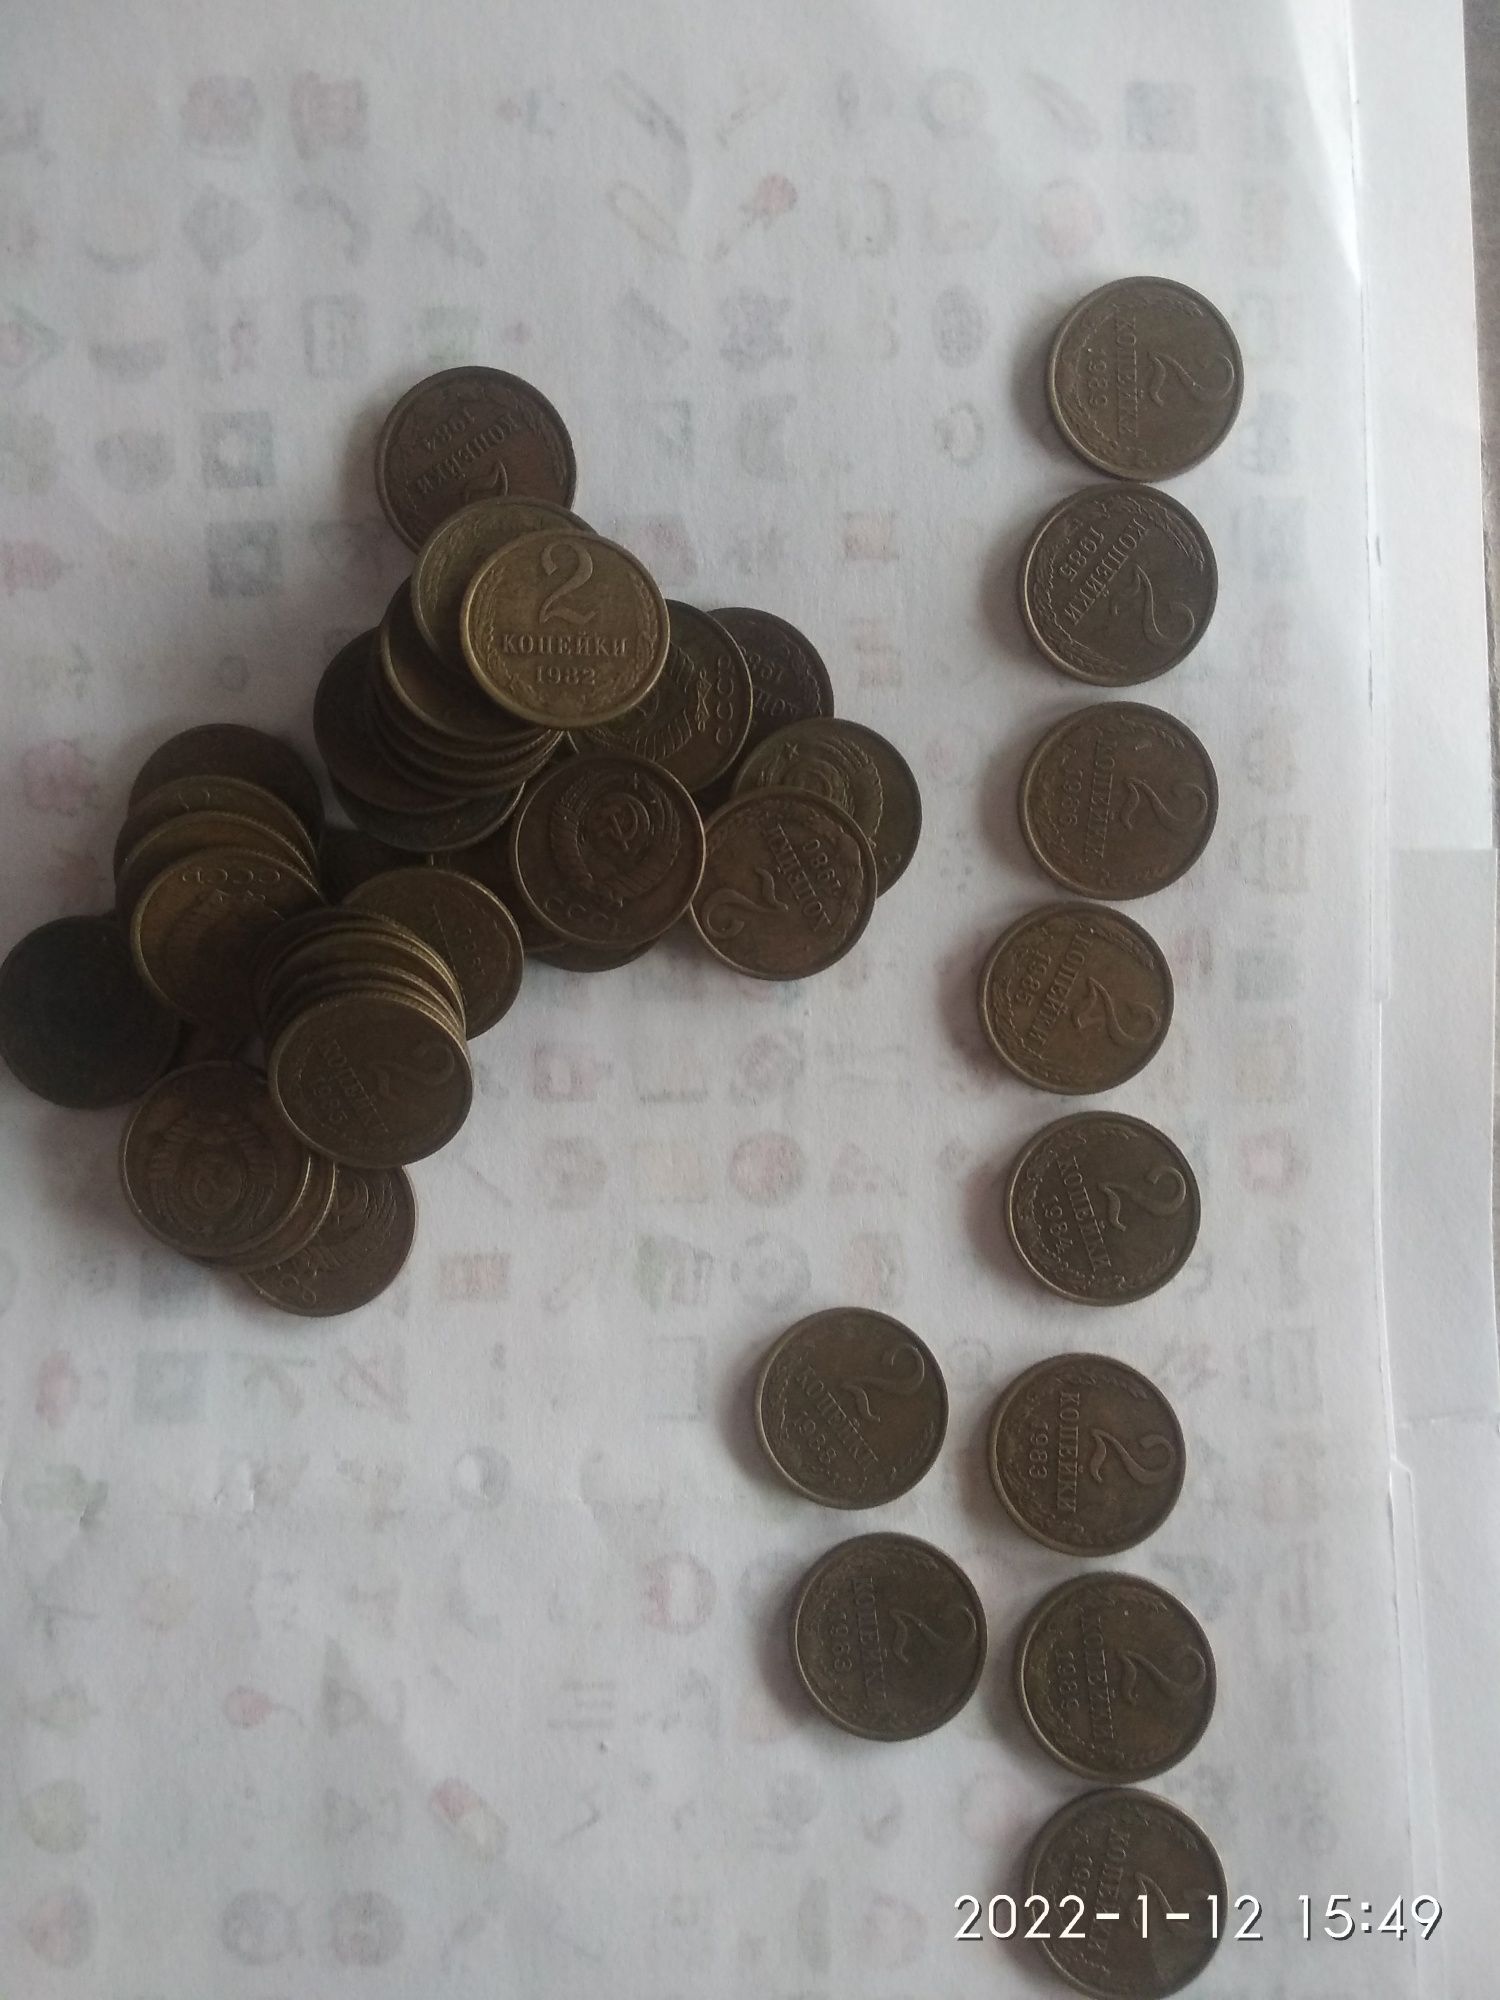 Продам монеты времён СССР.Номинал  2 копейки.